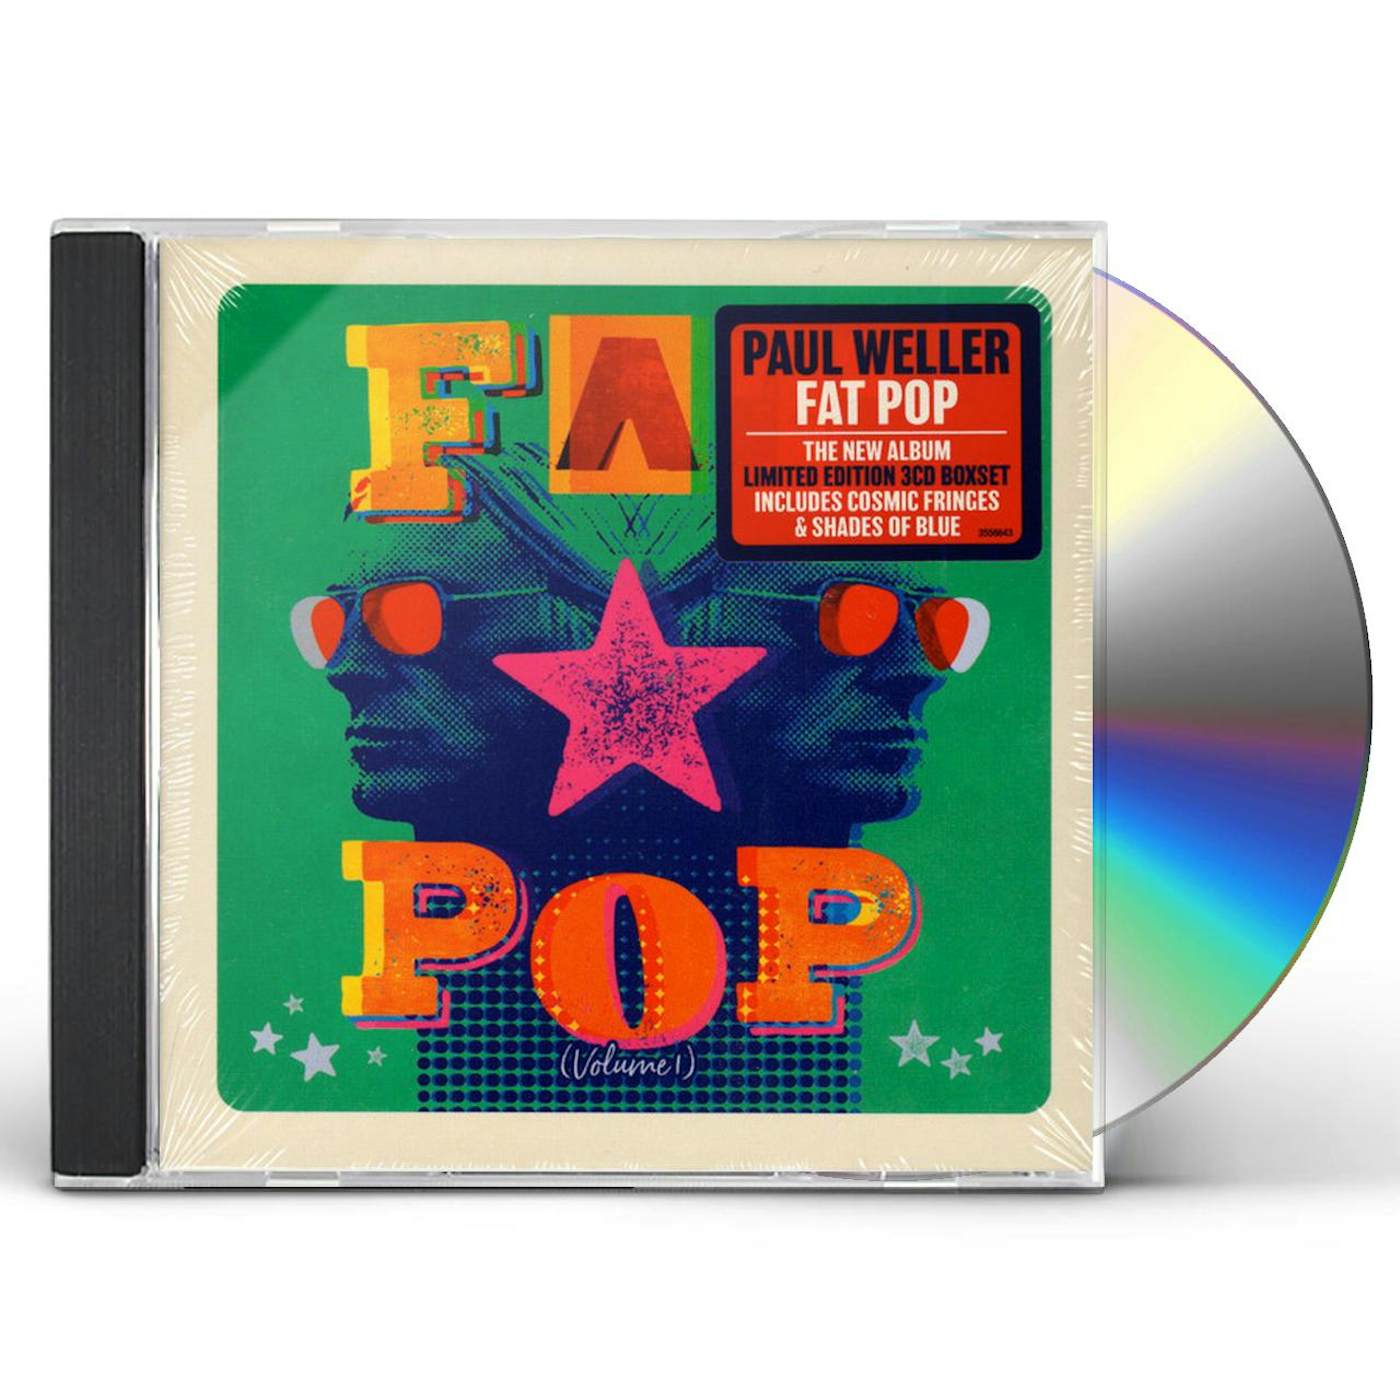 Paul Weller FAT POP CD